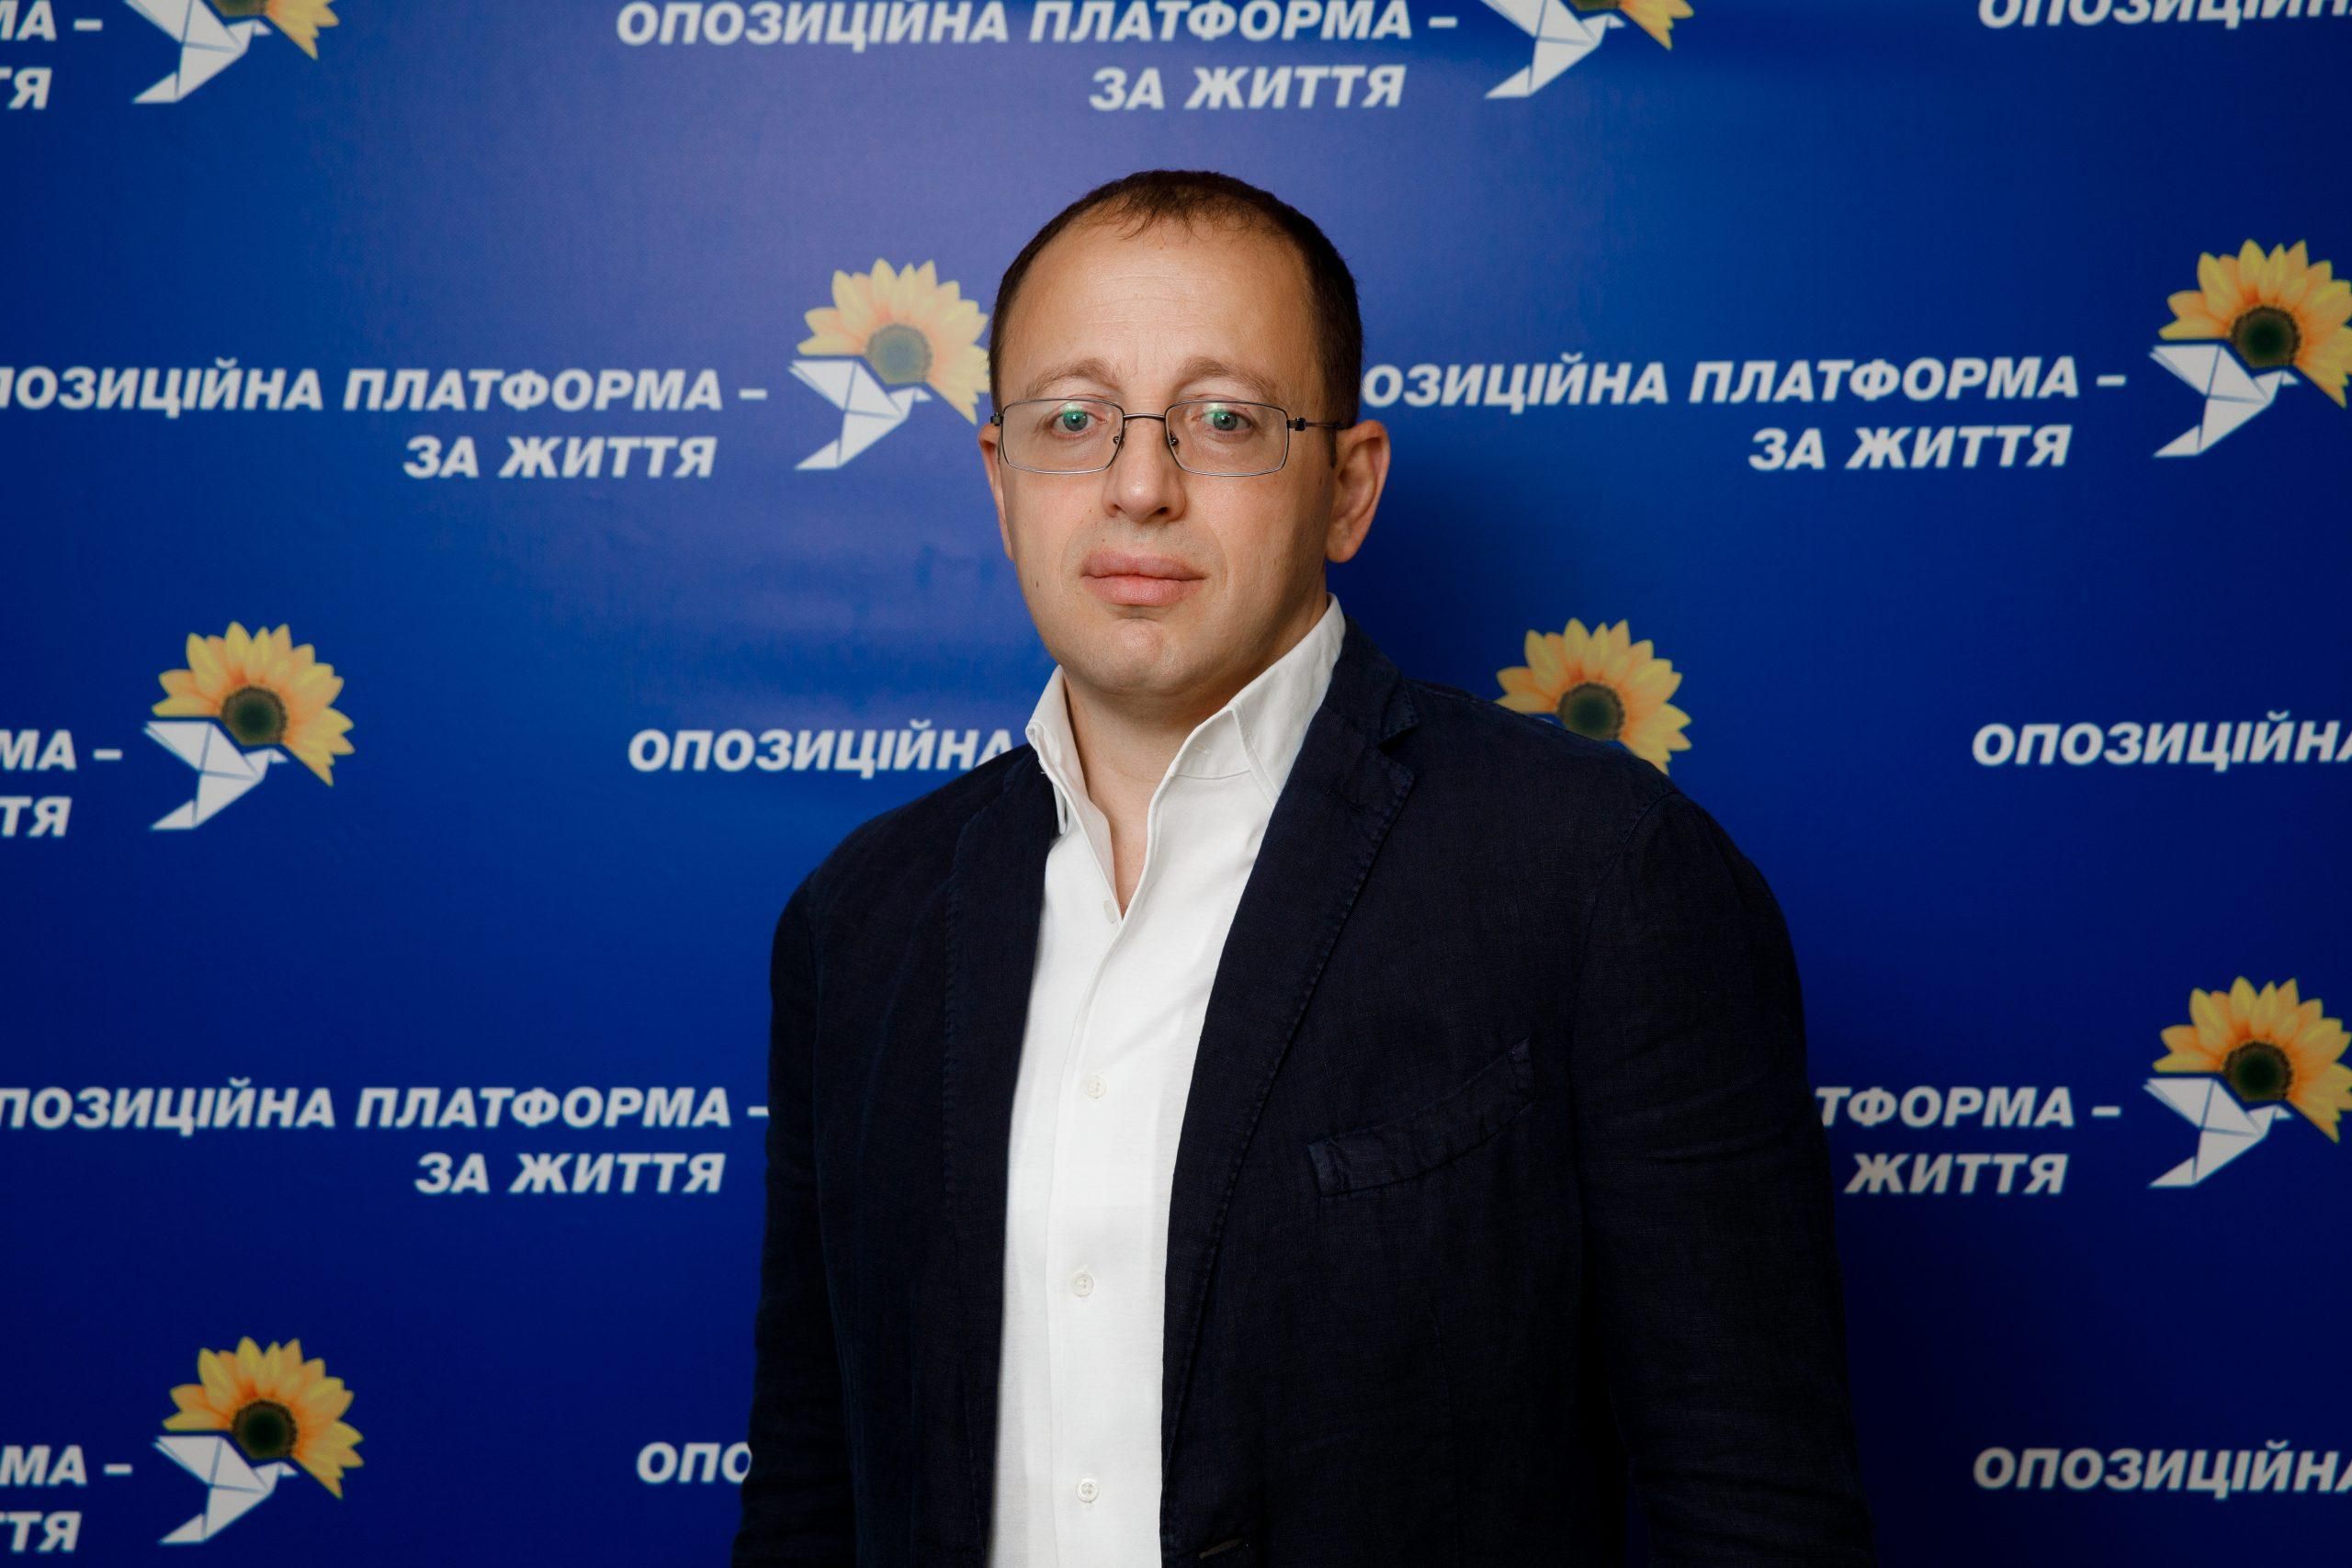 Представитель ОПЗЖ Гуфман во время сессии Днепропетровского облсовета заговорил на восточно-украинском: видео